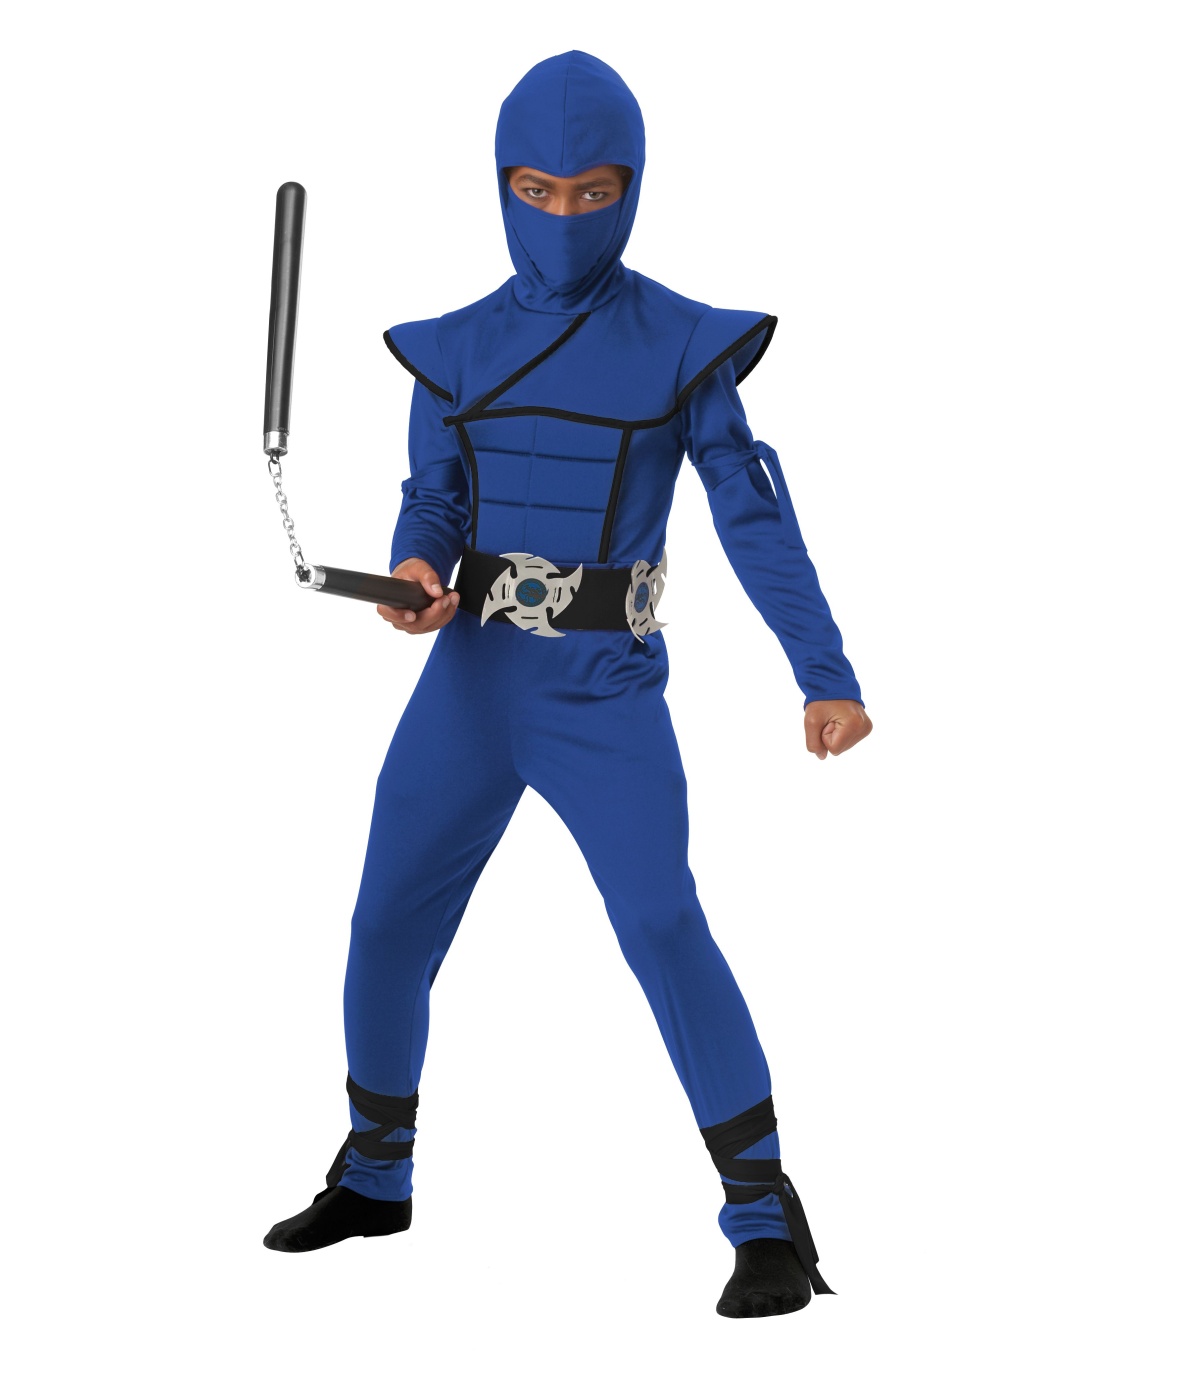  Boys Blue Stealth Ninja Costume